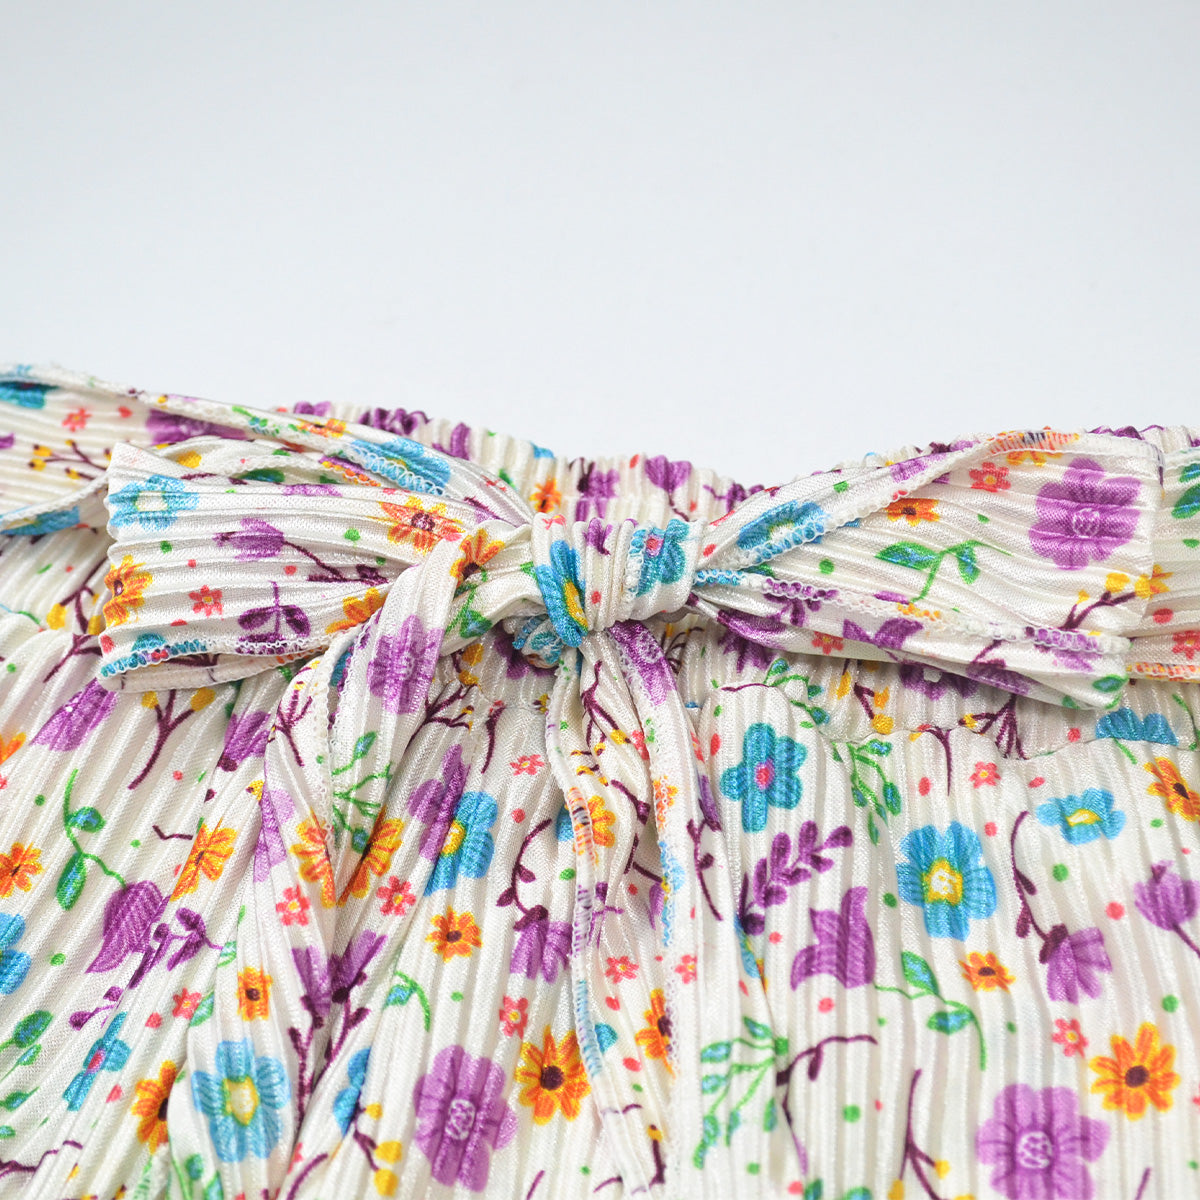 Conjunto blusa pantalón estampado de flores niña FLORY CONI0020